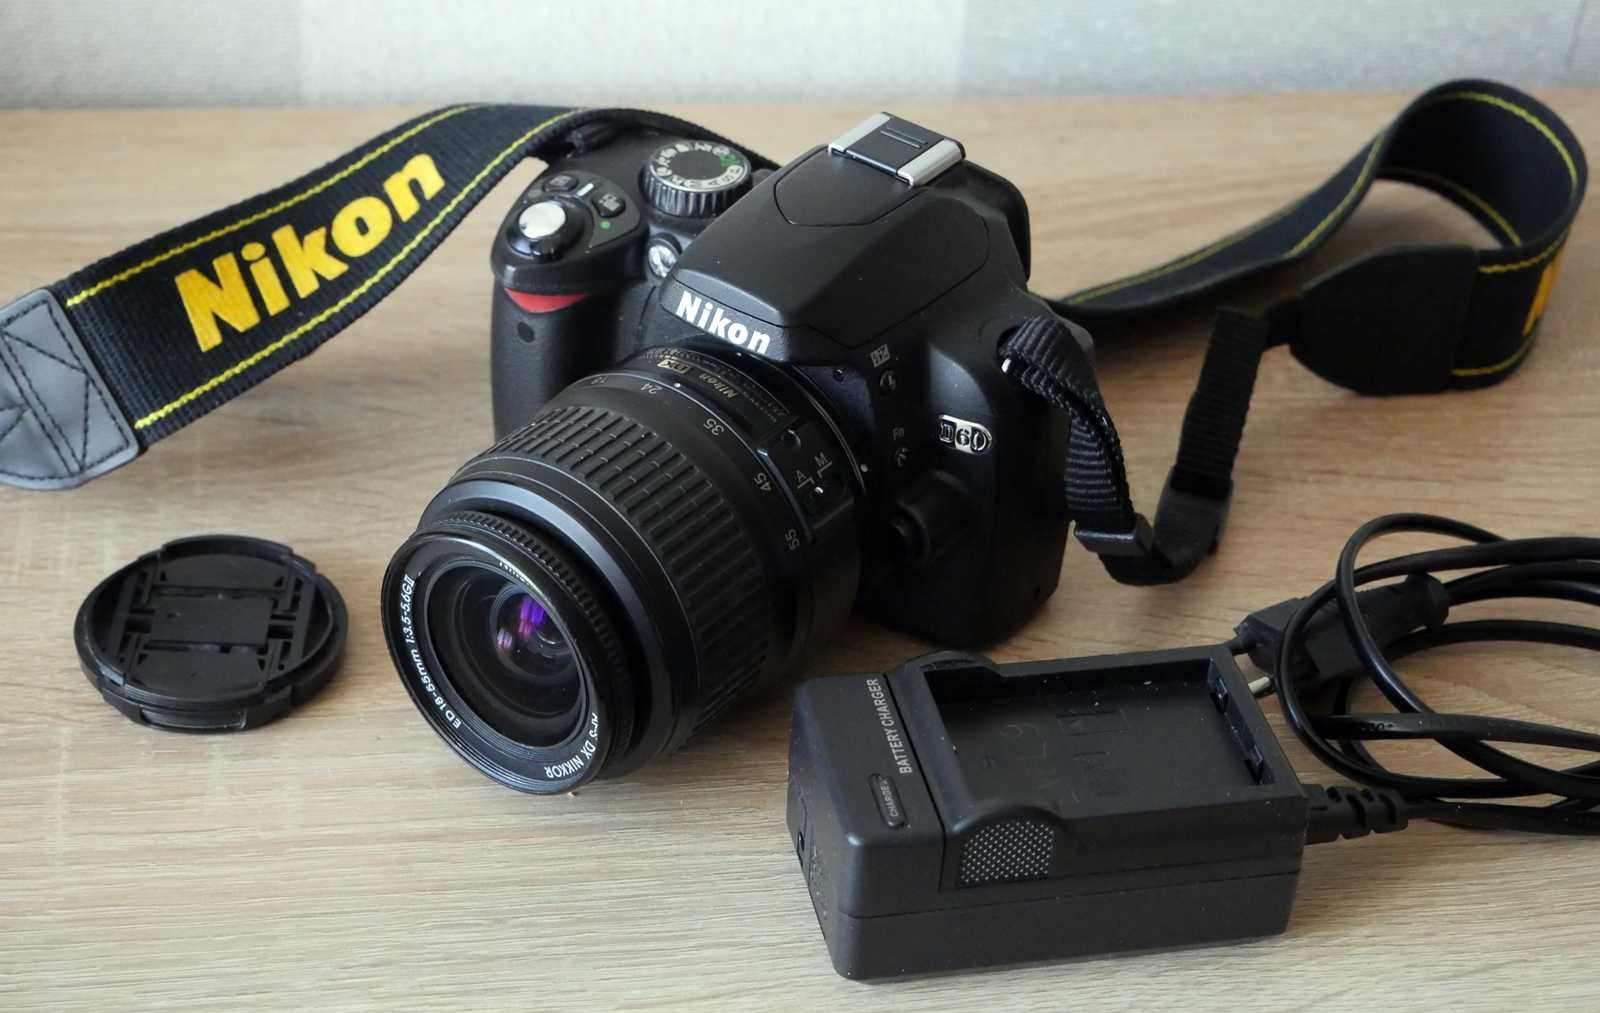 Aparat Nikon D60 jak nowy i torba do wyboru